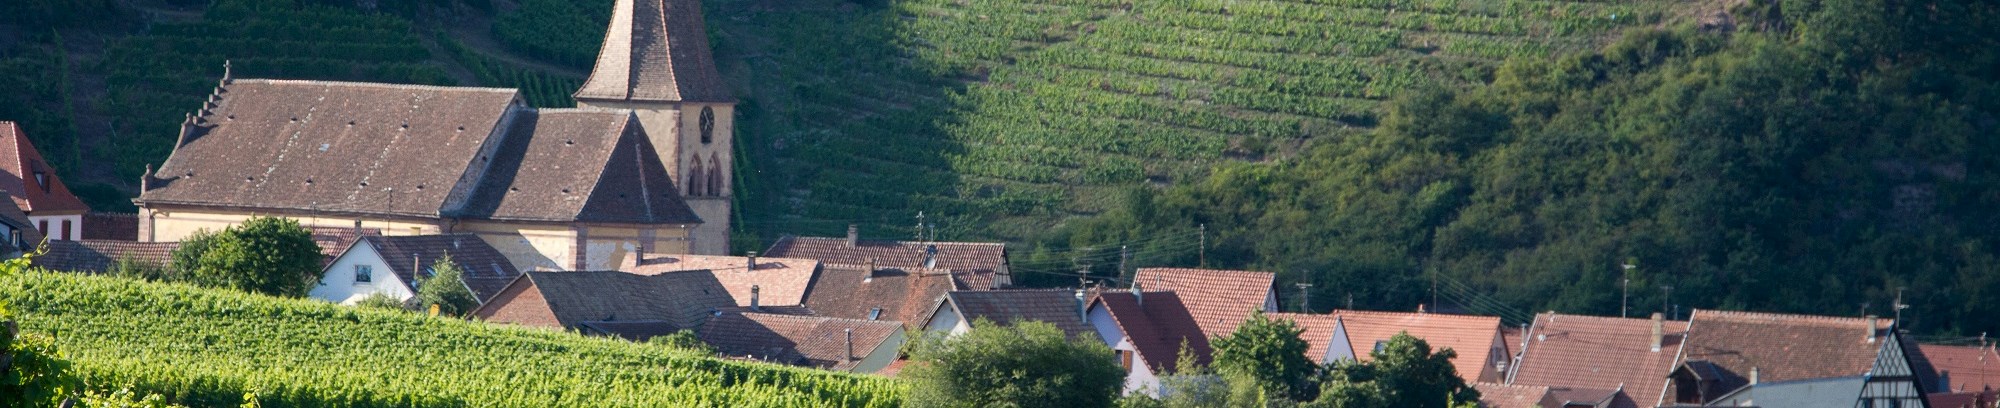 Vinsmagning med vine fra Alsace hos FOF København